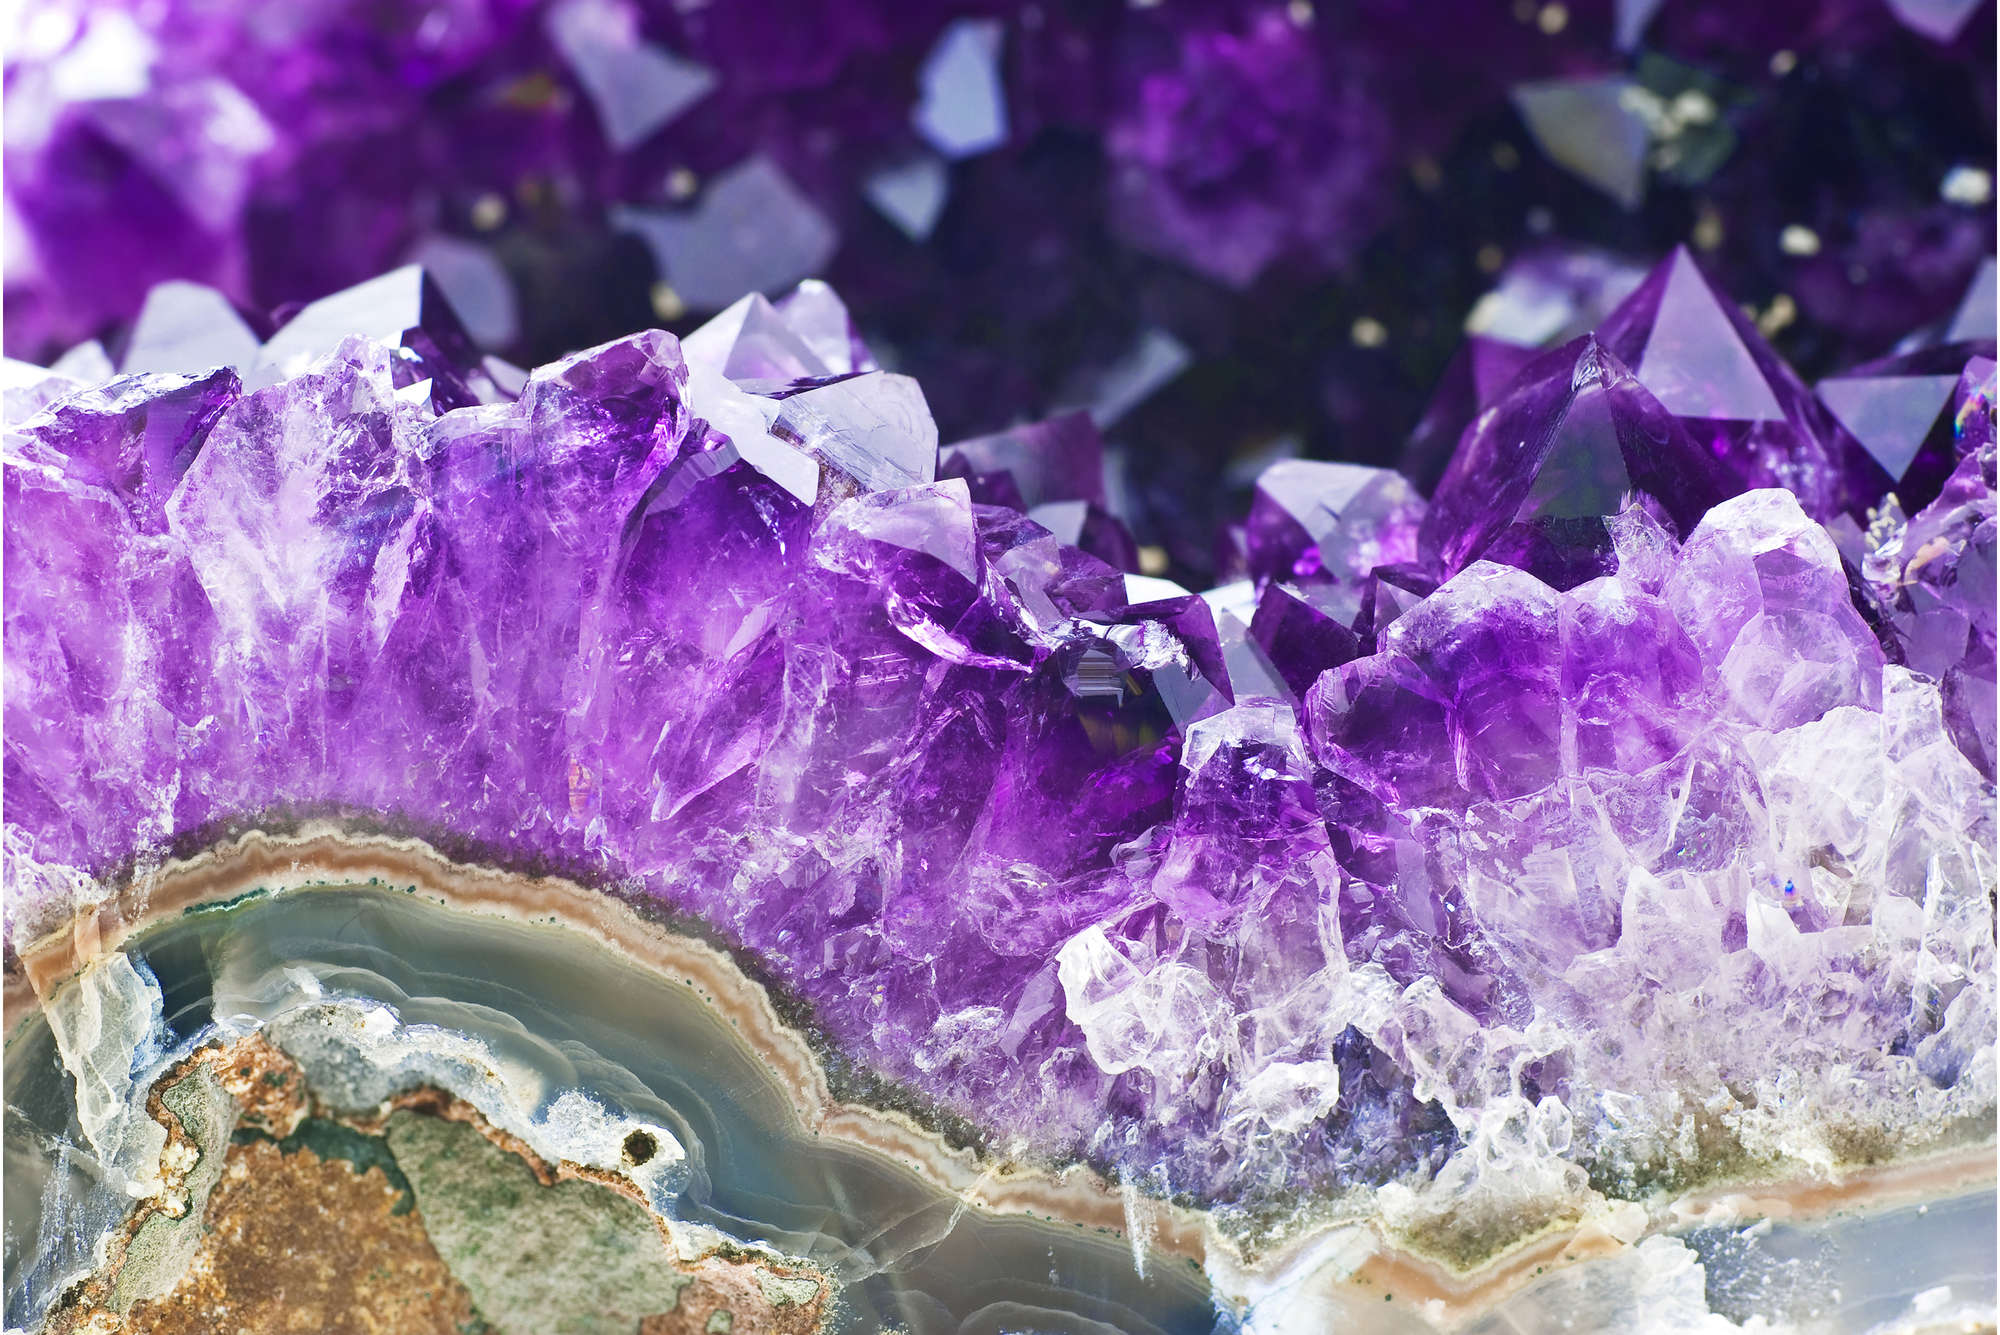             Fototapete Amethyst und Kristalle in Lila – Strukturiertes Vlies
        